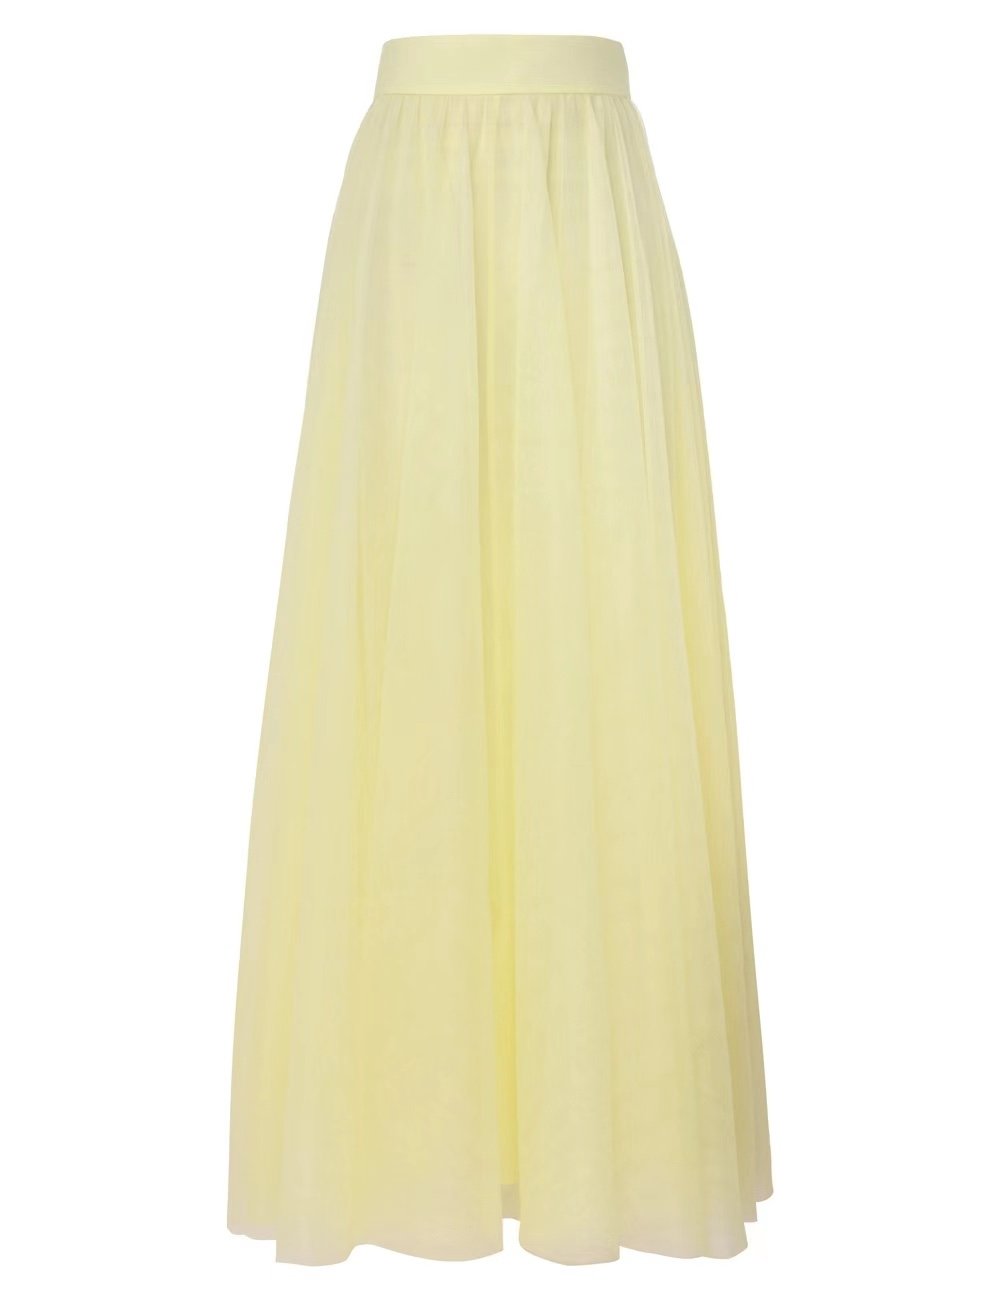 （爆款大量现货发售）#B1011 澳洲 Zimmermann半裙高腰纱裙气质优雅仙女裙颜色：淡黄色码数：0/S 1/M 2/L 3/XL